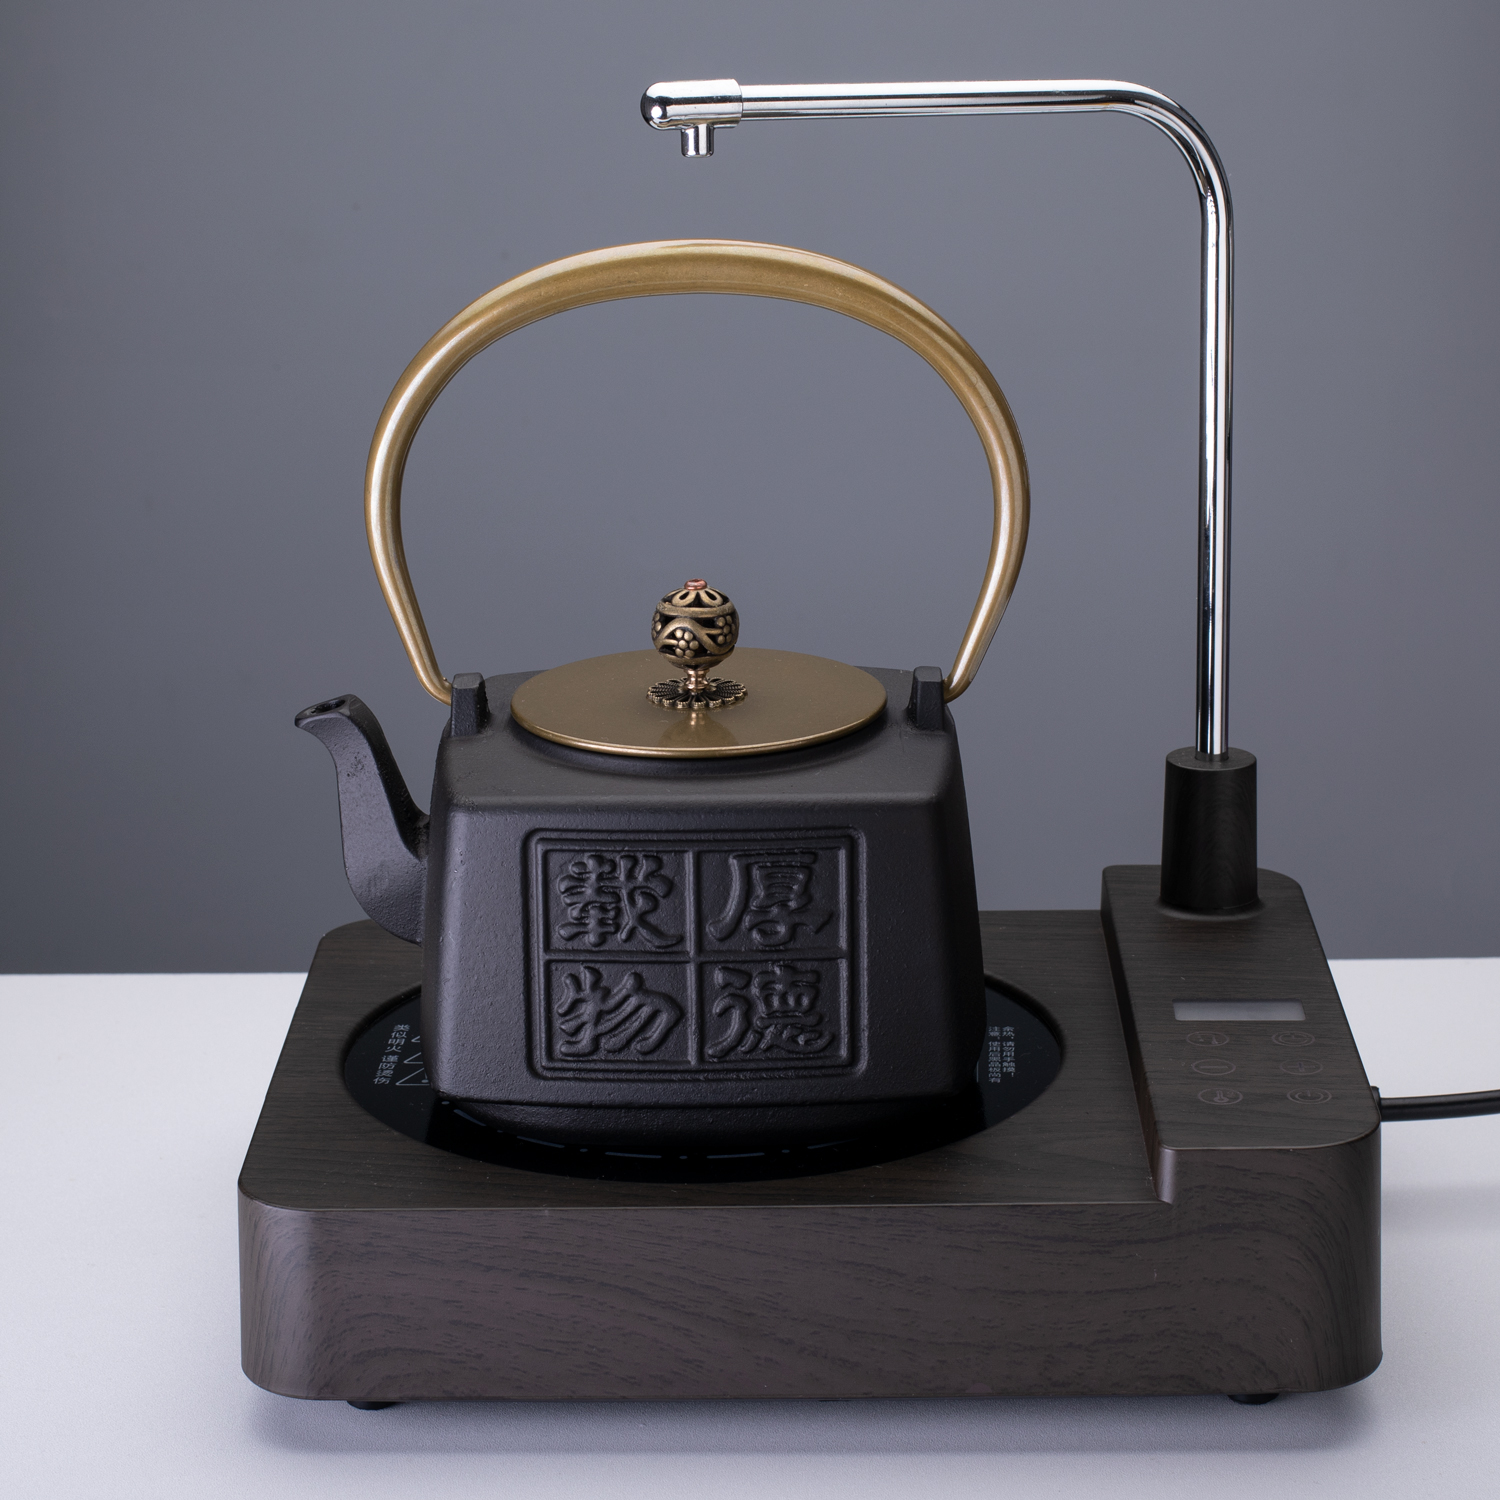 铁壶烧水壶铸铁壶煮水泡茶专用自动上水电陶炉煮茶器抽水煮茶炉 - 图1